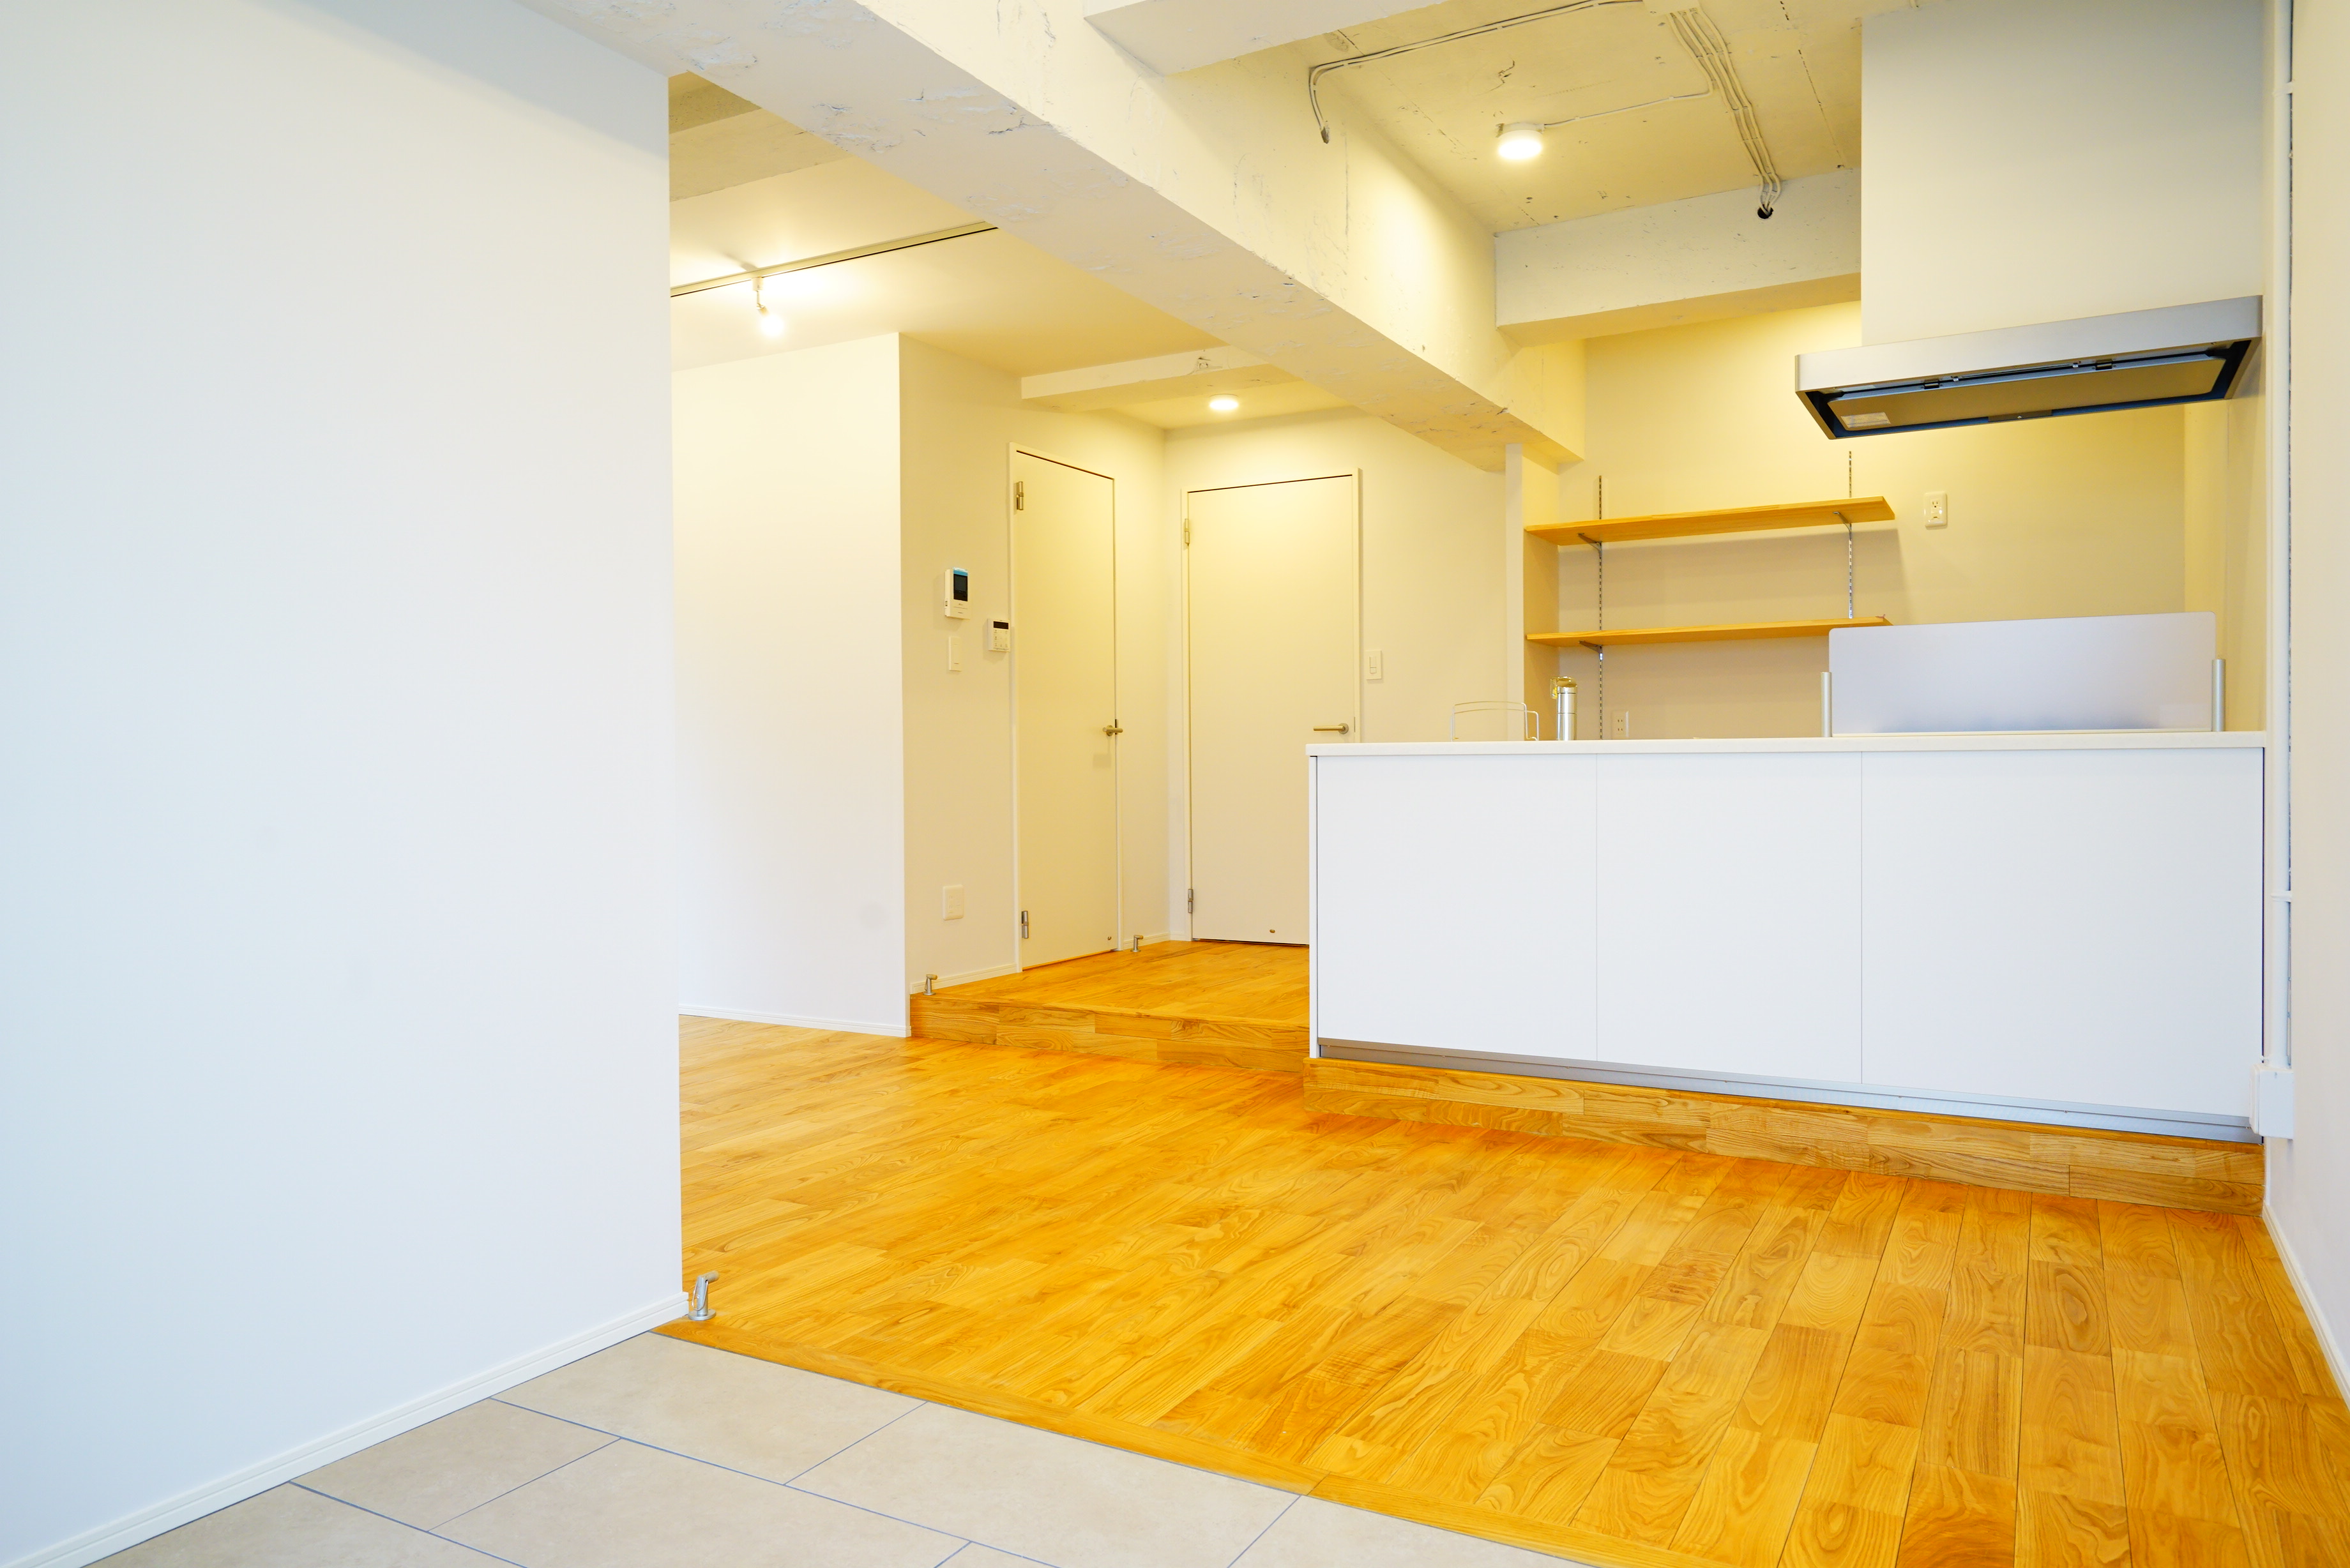 カウンターキッチンがあるお部屋。こちらはグッドルームオリジナルリノベーション「TOMOS」でデザインされた1SLDKのお部屋です。